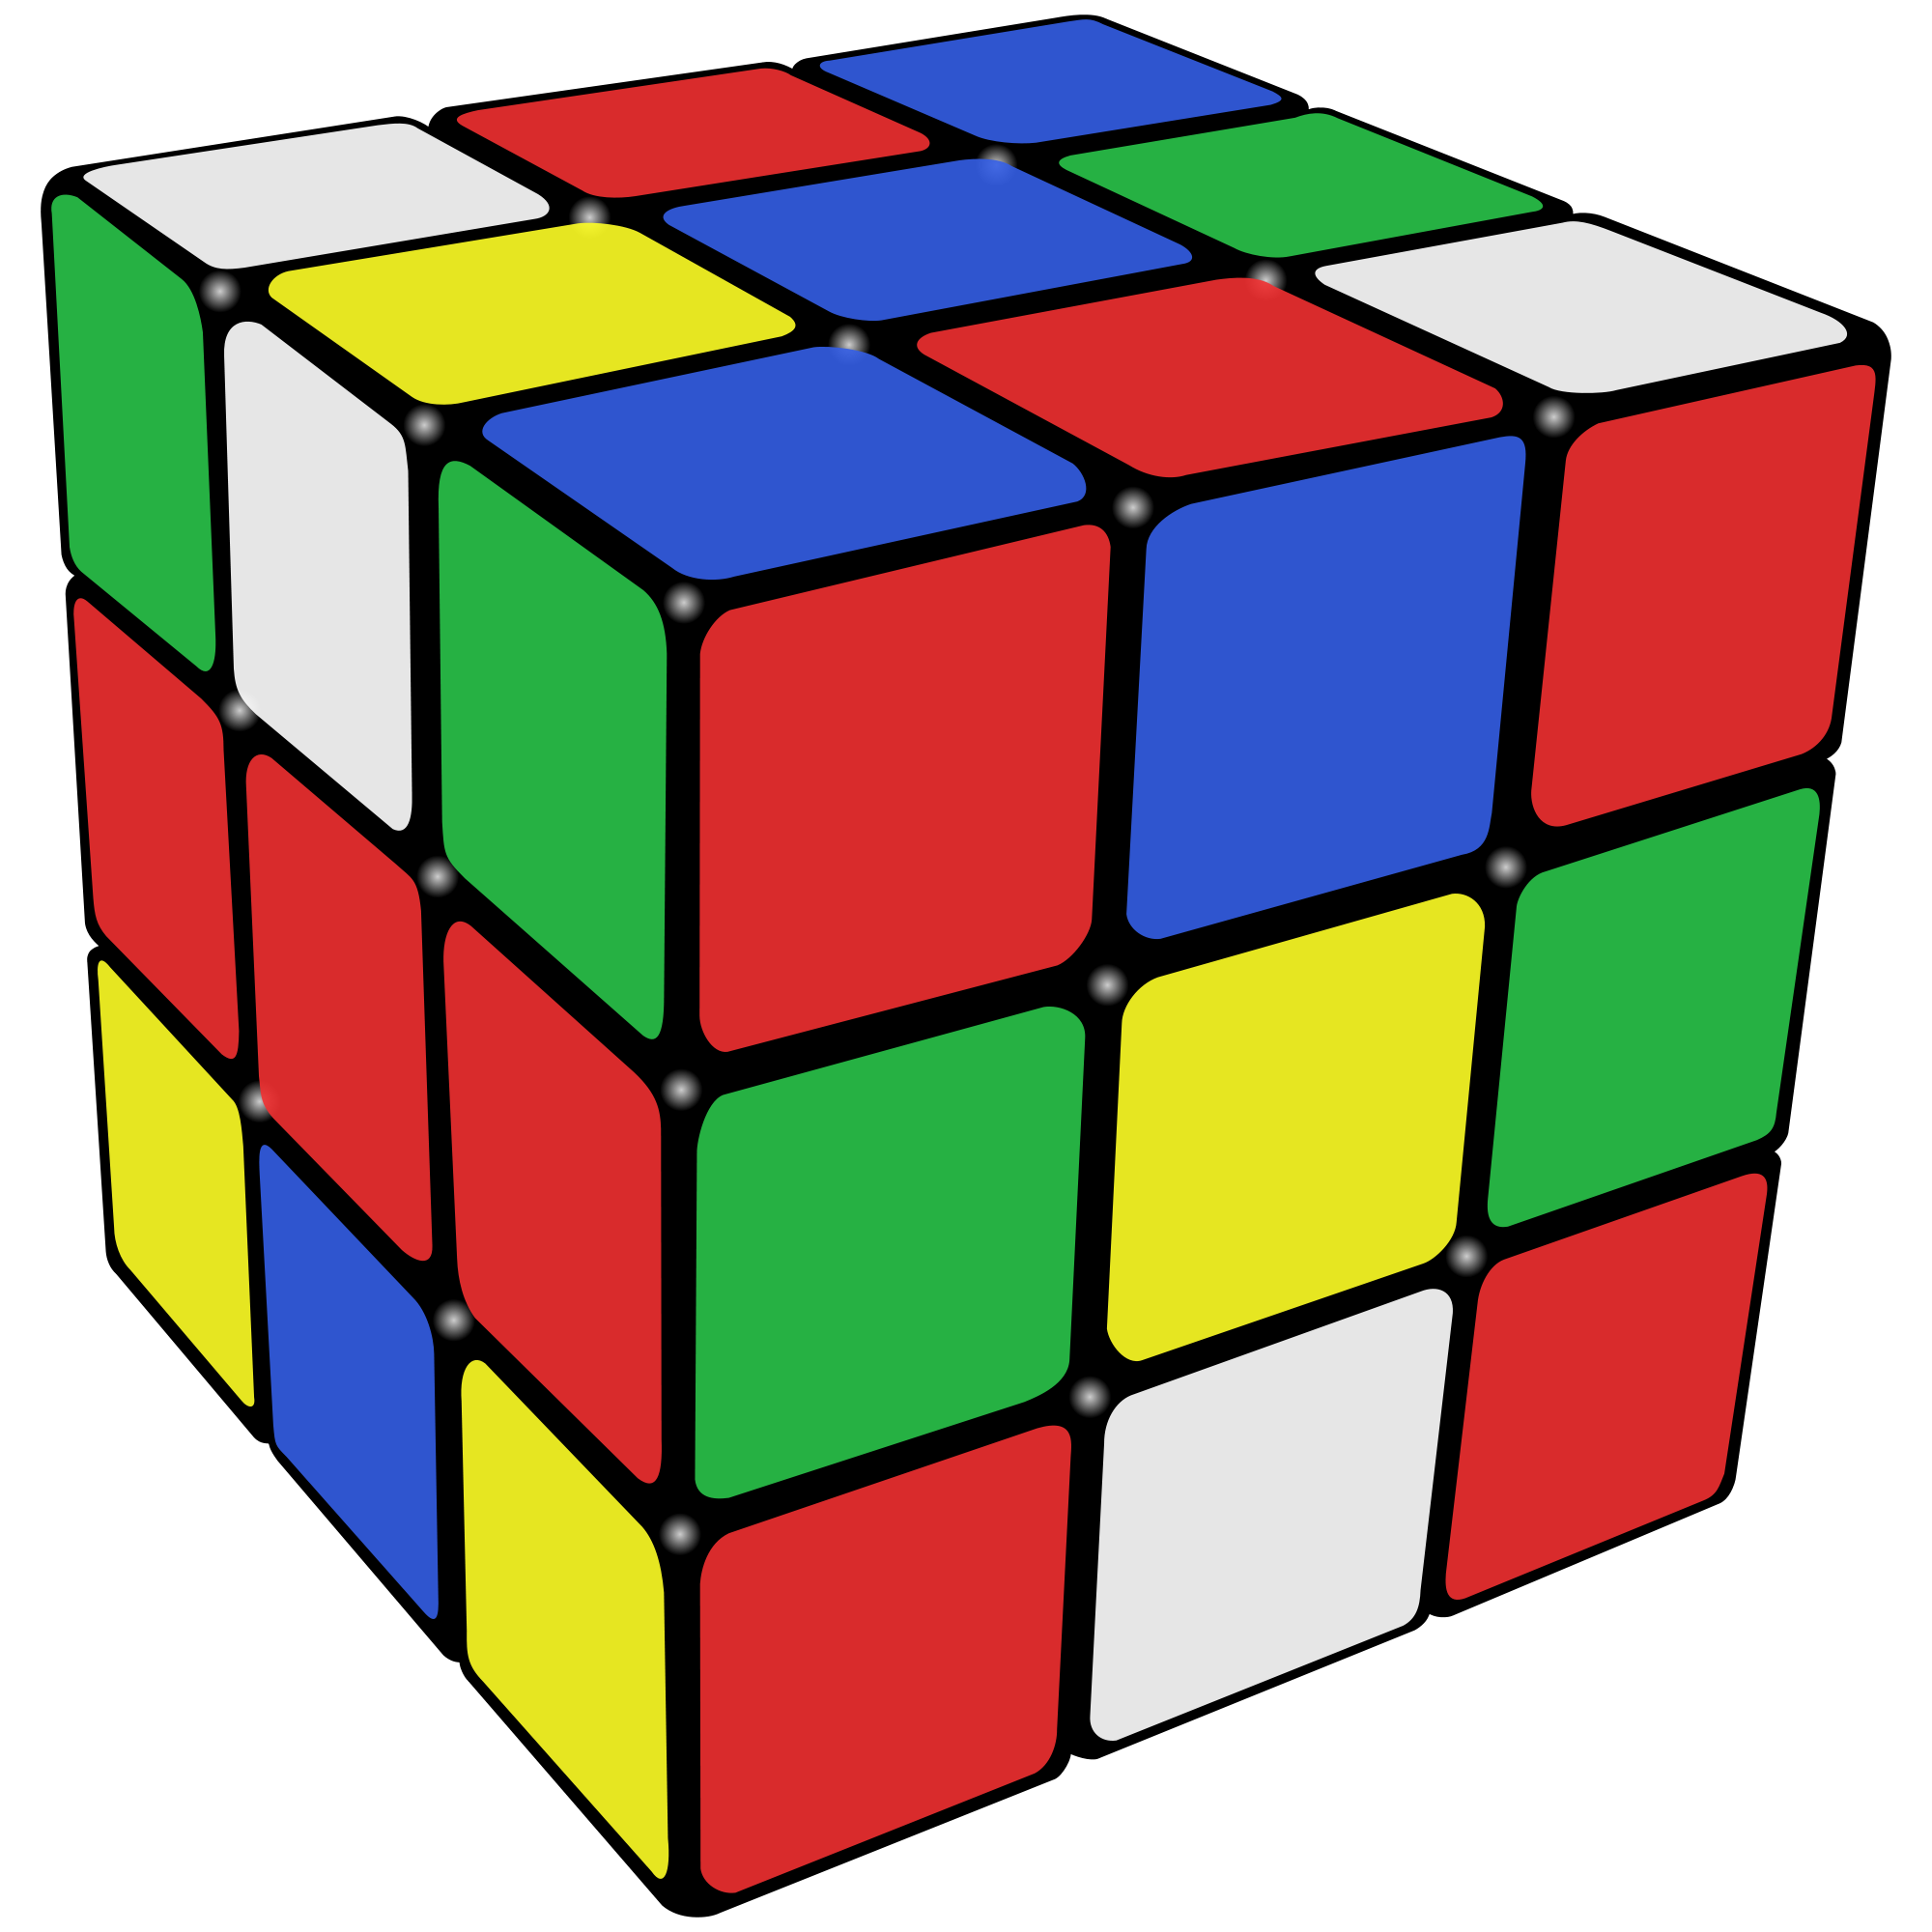 Immagine Trasparente cubo colorato